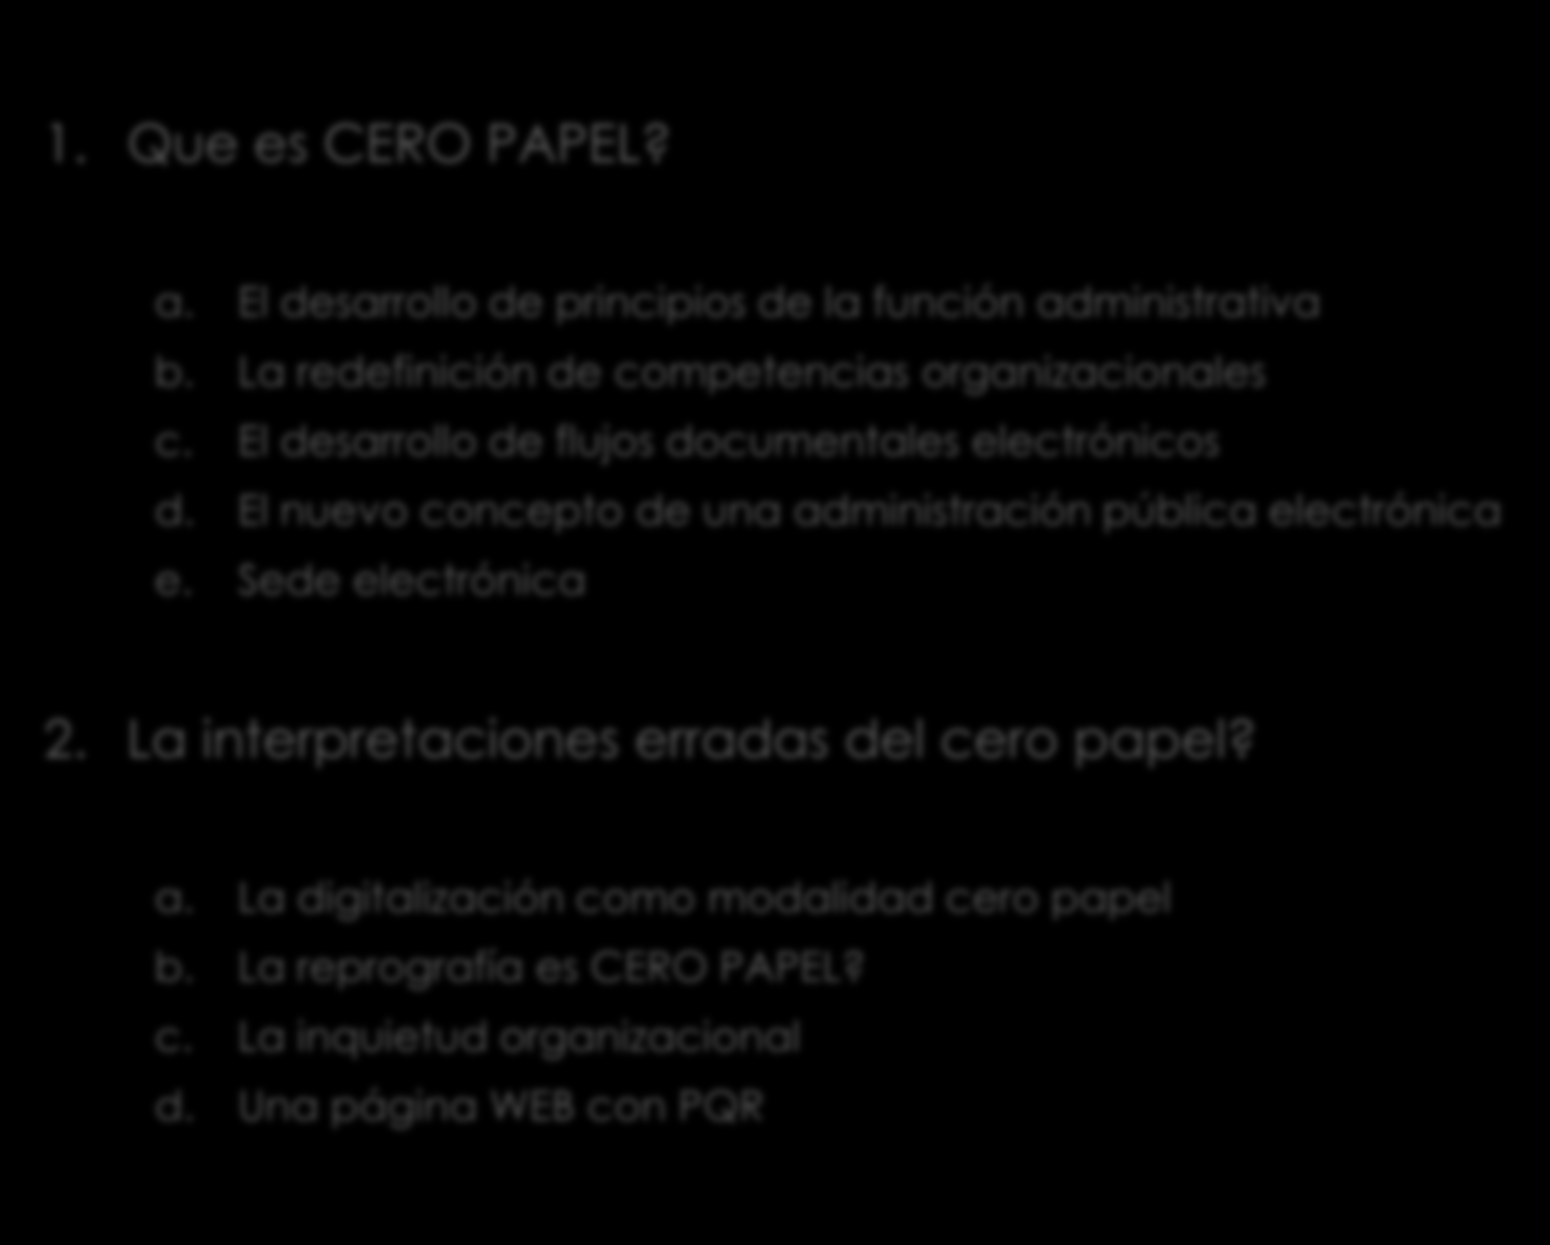 (vi) Cero papel y Virtualización 1. Que es CERO PAPEL? a. El desarrollo de principios de la función administrativa b. La redefinición de competencias organizacionales c.